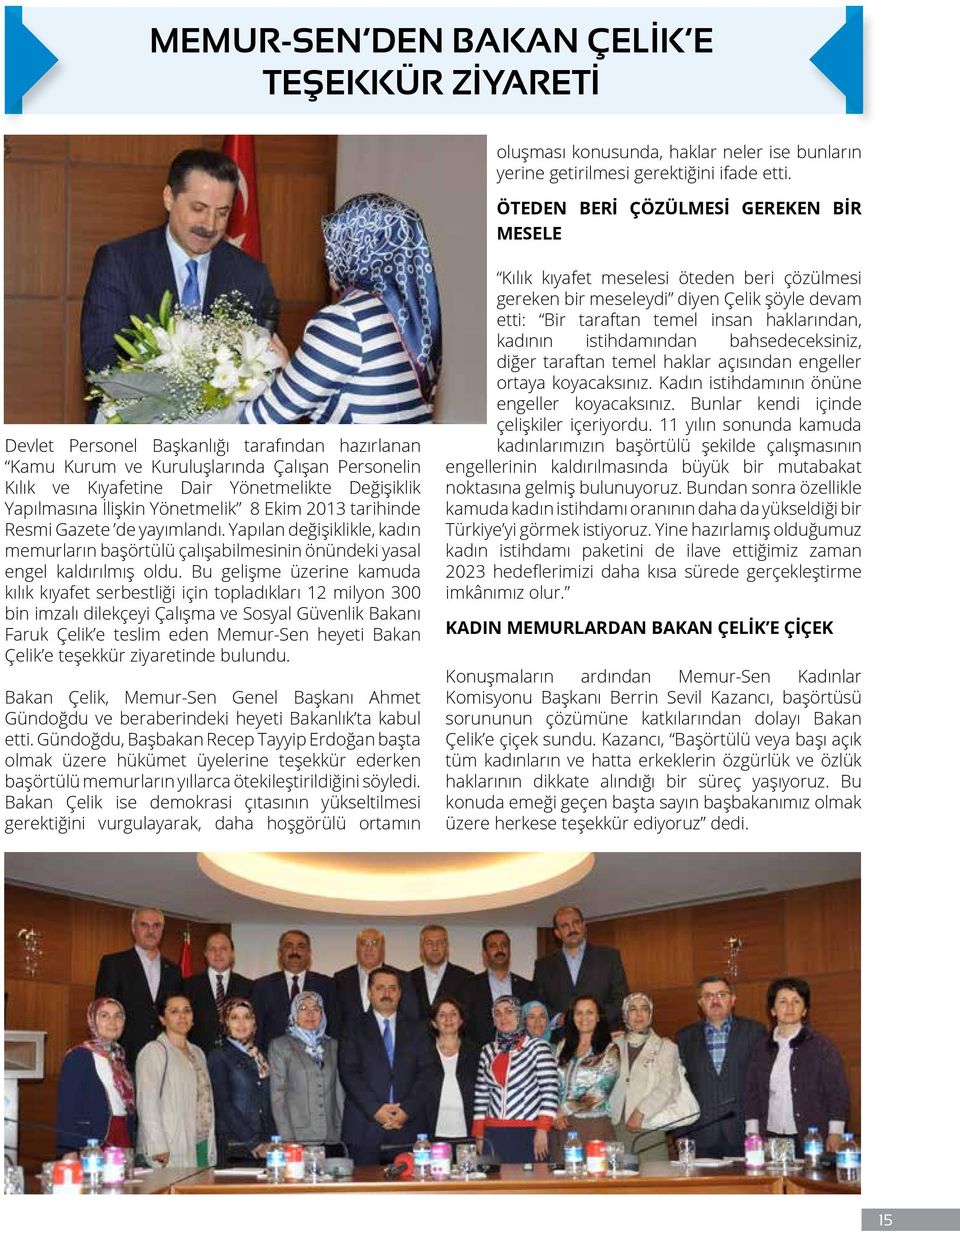 İlişkin Yönetmelik 8 Ekim 2013 tarihinde Resmi Gazete de yayımlandı. Yapılan değişiklikle, kadın memurların başörtülü çalışabilmesinin önündeki yasal engel kaldırılmış oldu.